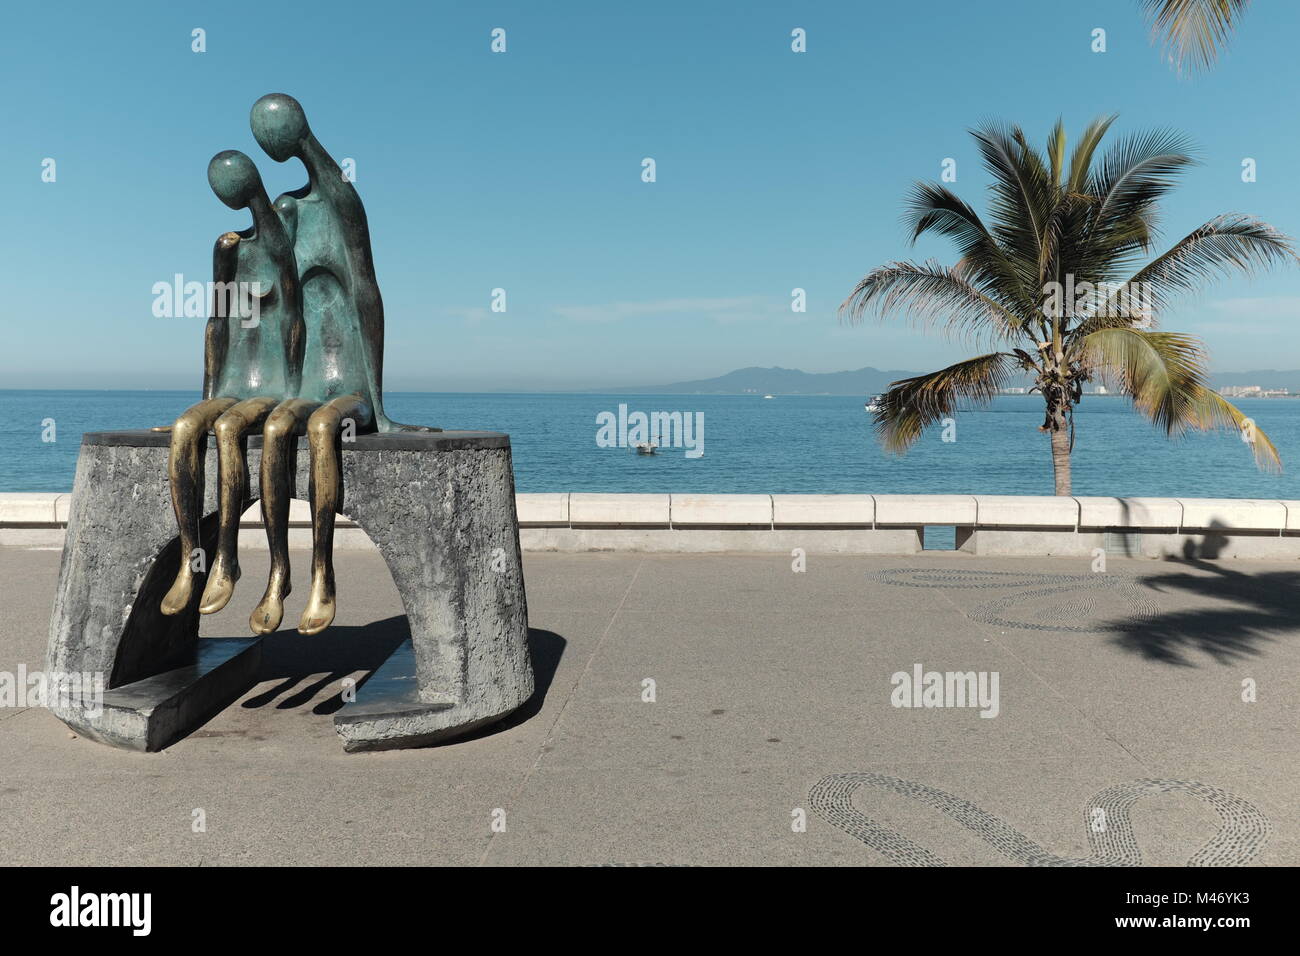 'Nostalgie' von Ramiz Barquet hat eine ficture der Malecon in Puerto Vallarta, Mexiko seit 1984. Stockfoto